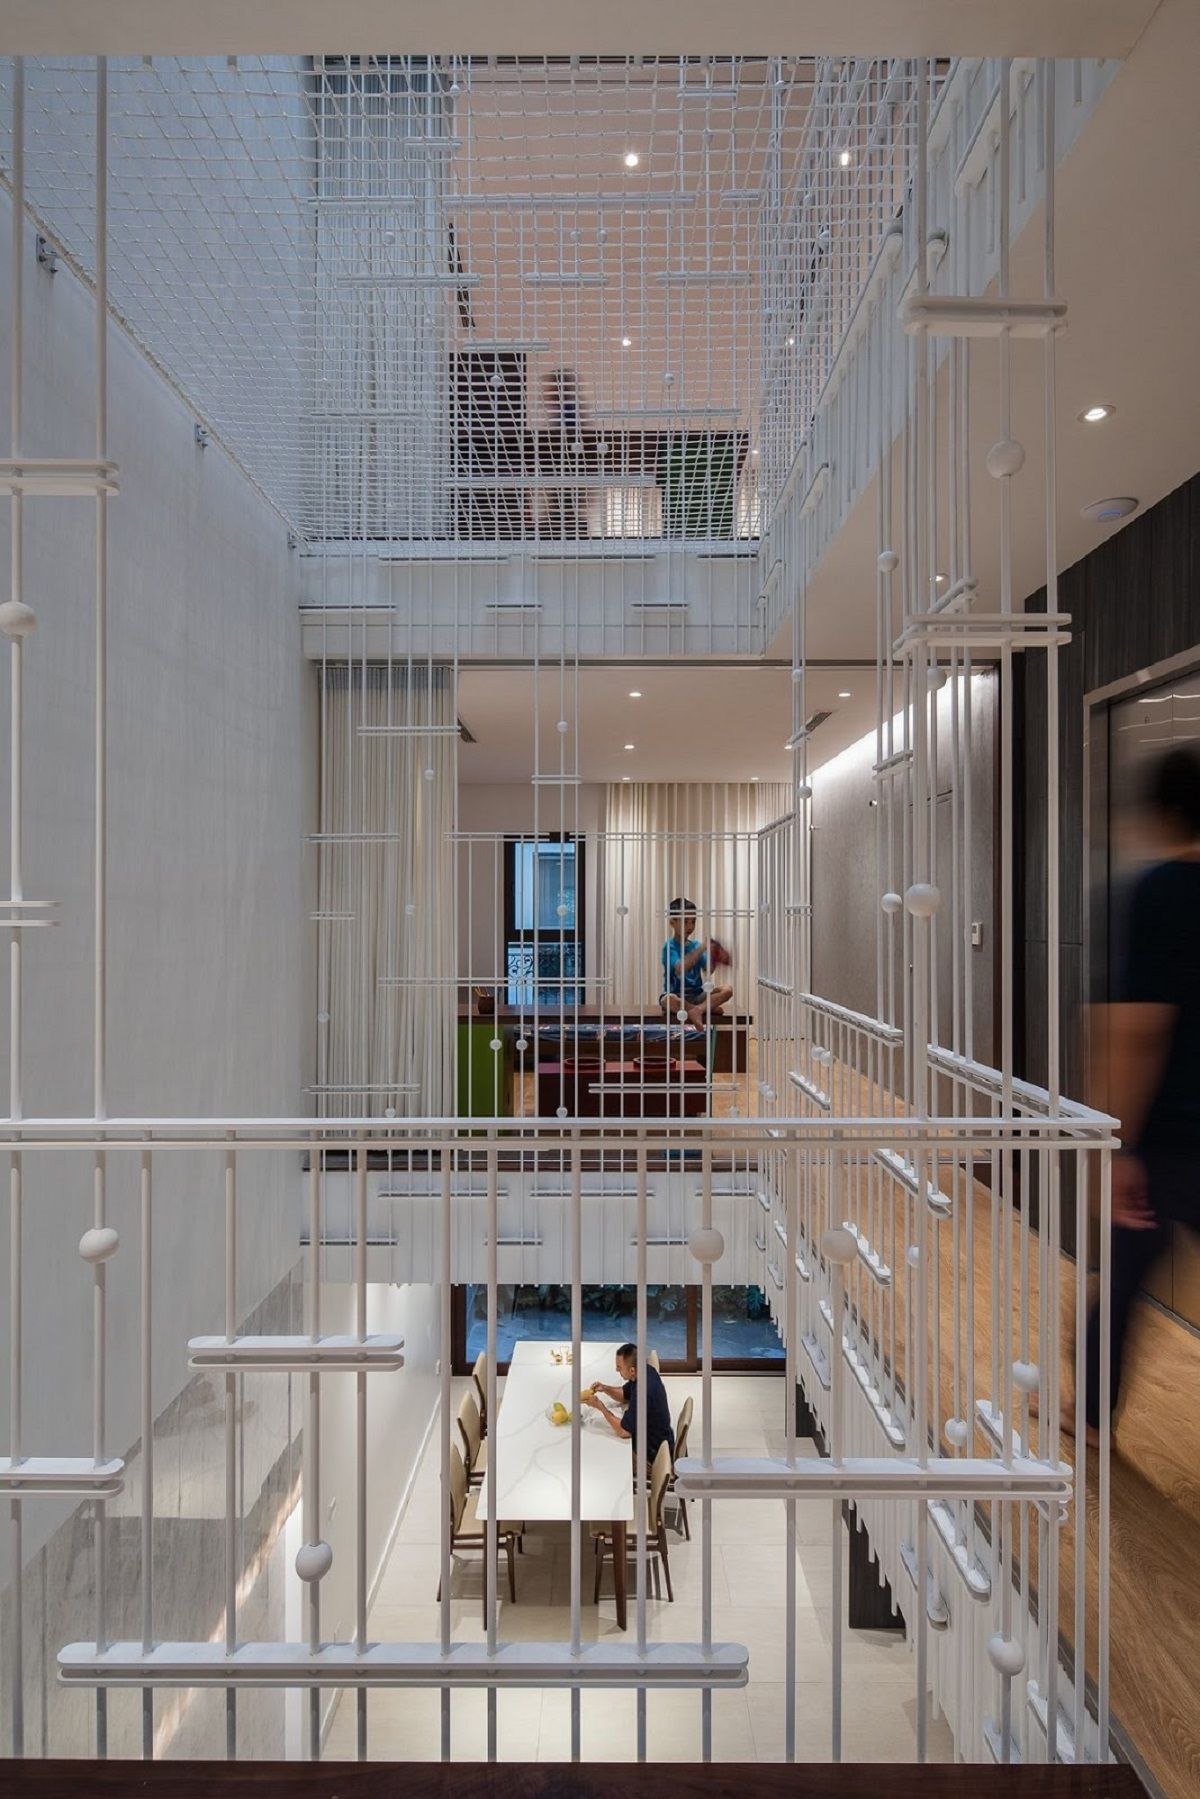 LK12 House - Riêng tư và kết nối của một gia đình hiện đại | VUUV architecture & interior design